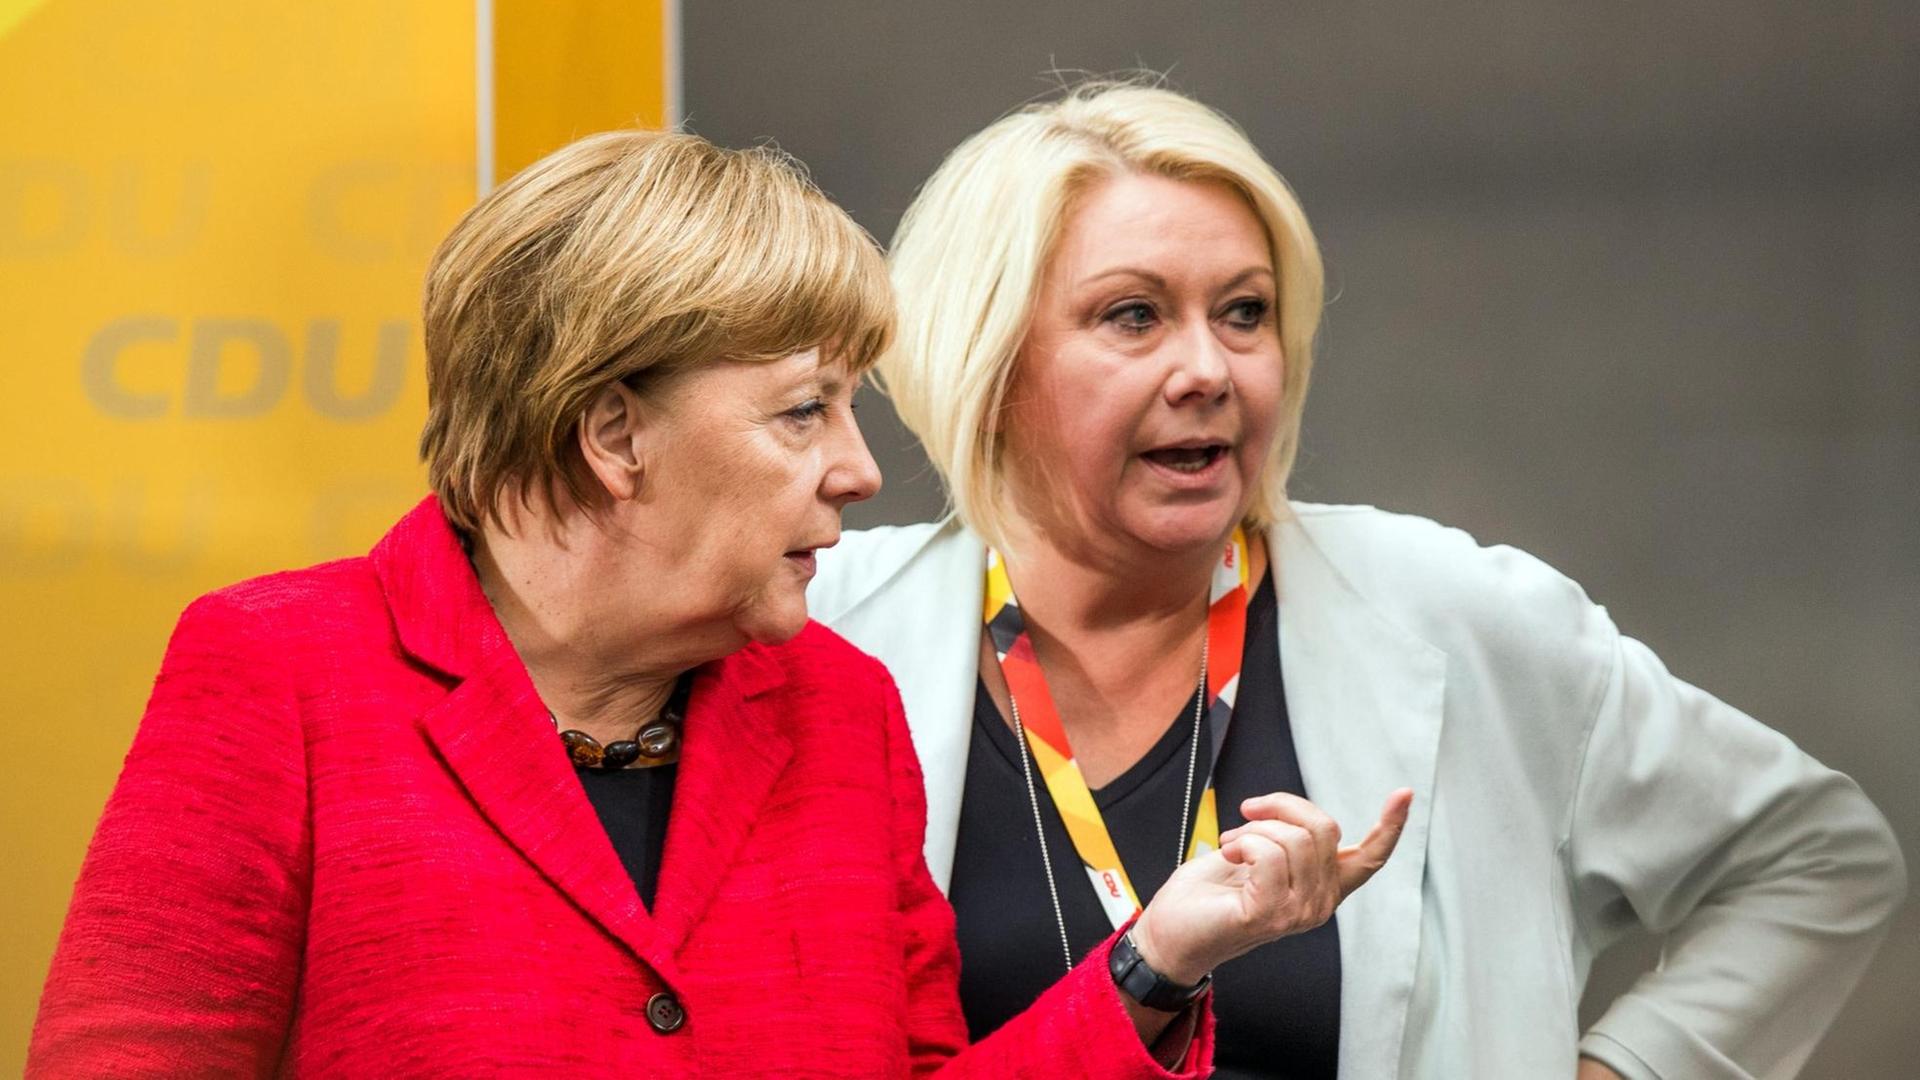 Bundeskanzlerin Angela Merkel (CDU, l) und die CDU-Bundestagsabgeordnete Karin Strenz (r) sprechen am Rande eines Wahlkampftauftritts in Wismar (Mecklenburg-Vorpommern) miteinandern. Sechs Tage vor der Bundestagswahl kommt Merkel zu zwei Auftritten nach Mecklenburg-Vorpommern.